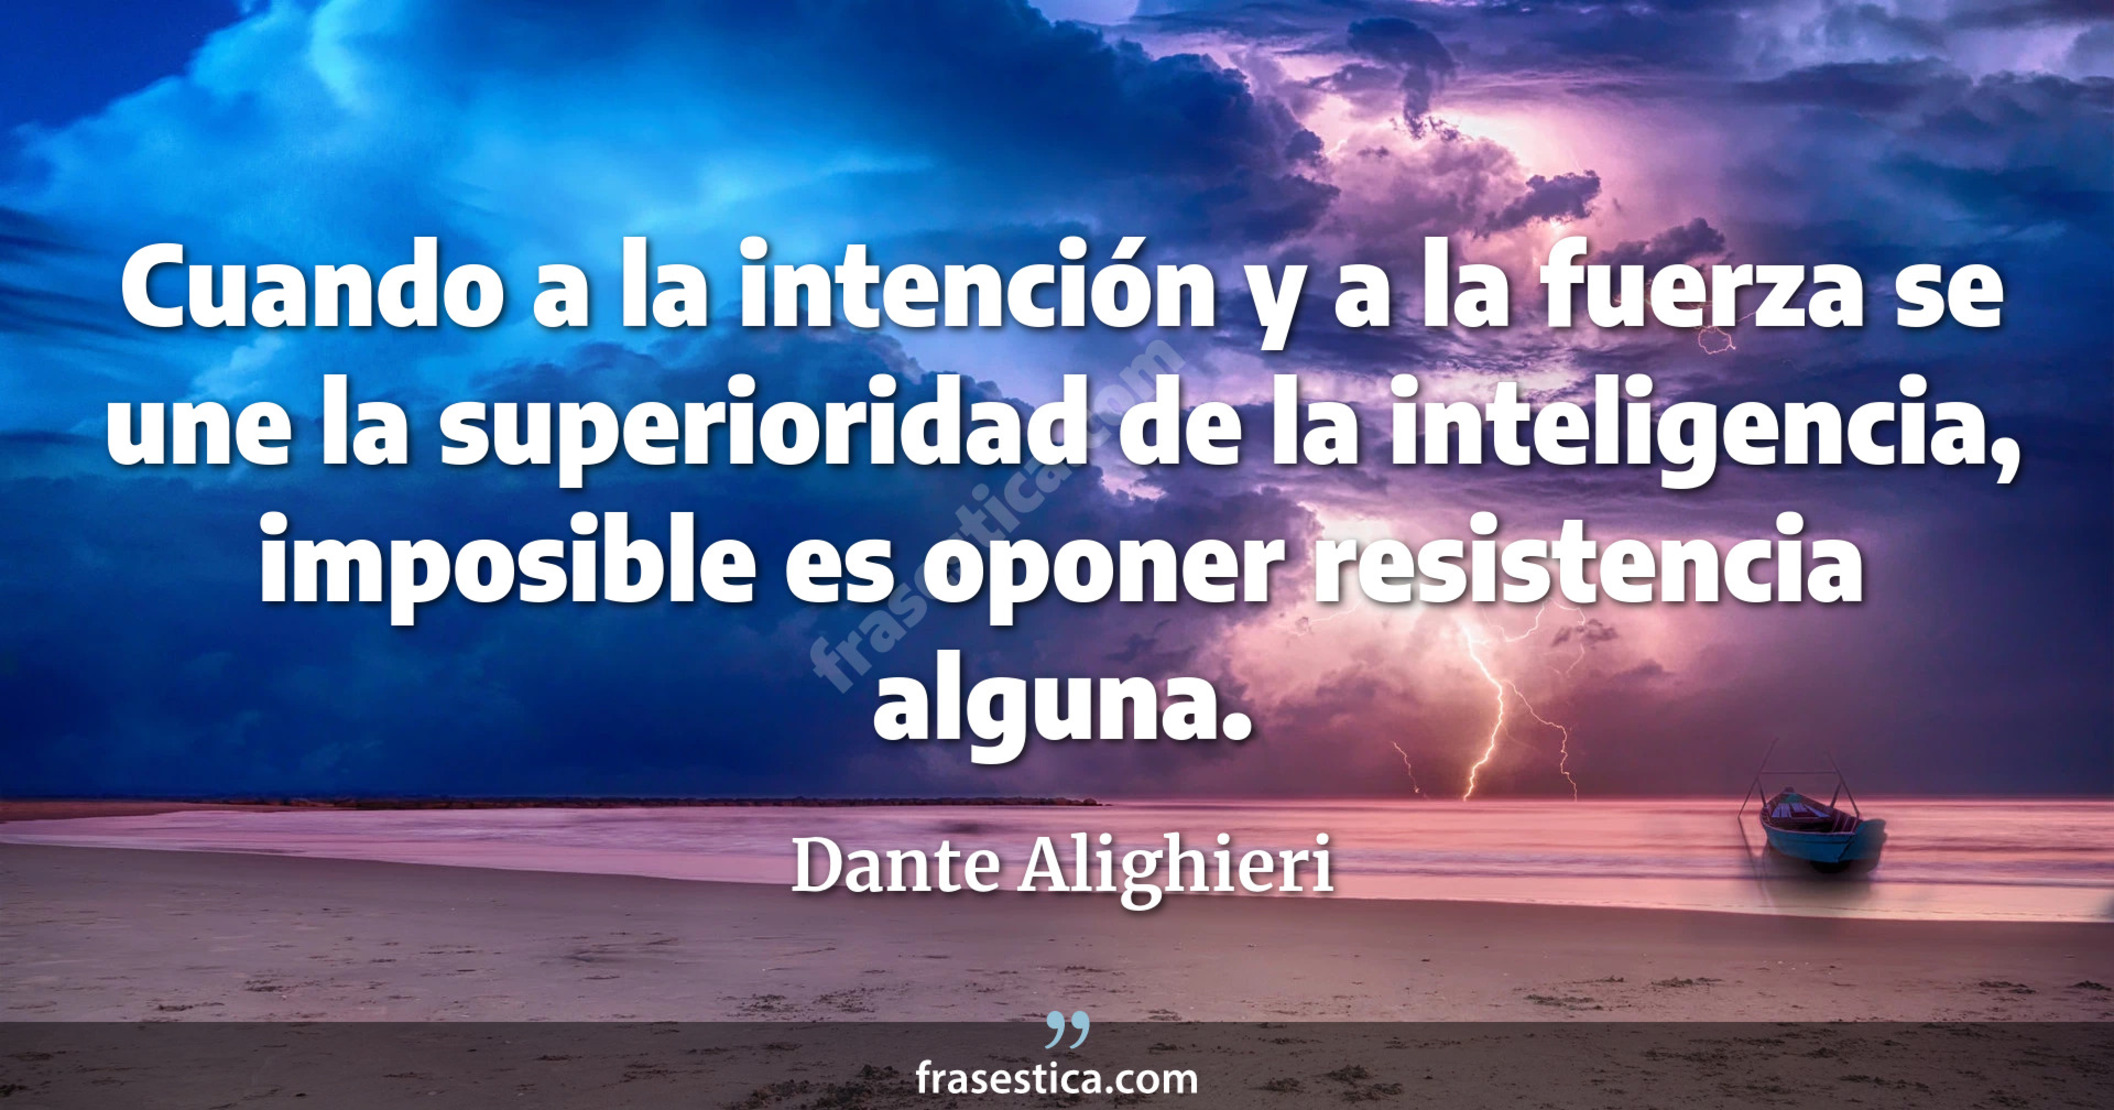 Cuando a la intención y a la fuerza se une la superioridad de la inteligencia, imposible es oponer resistencia alguna. - Dante Alighieri